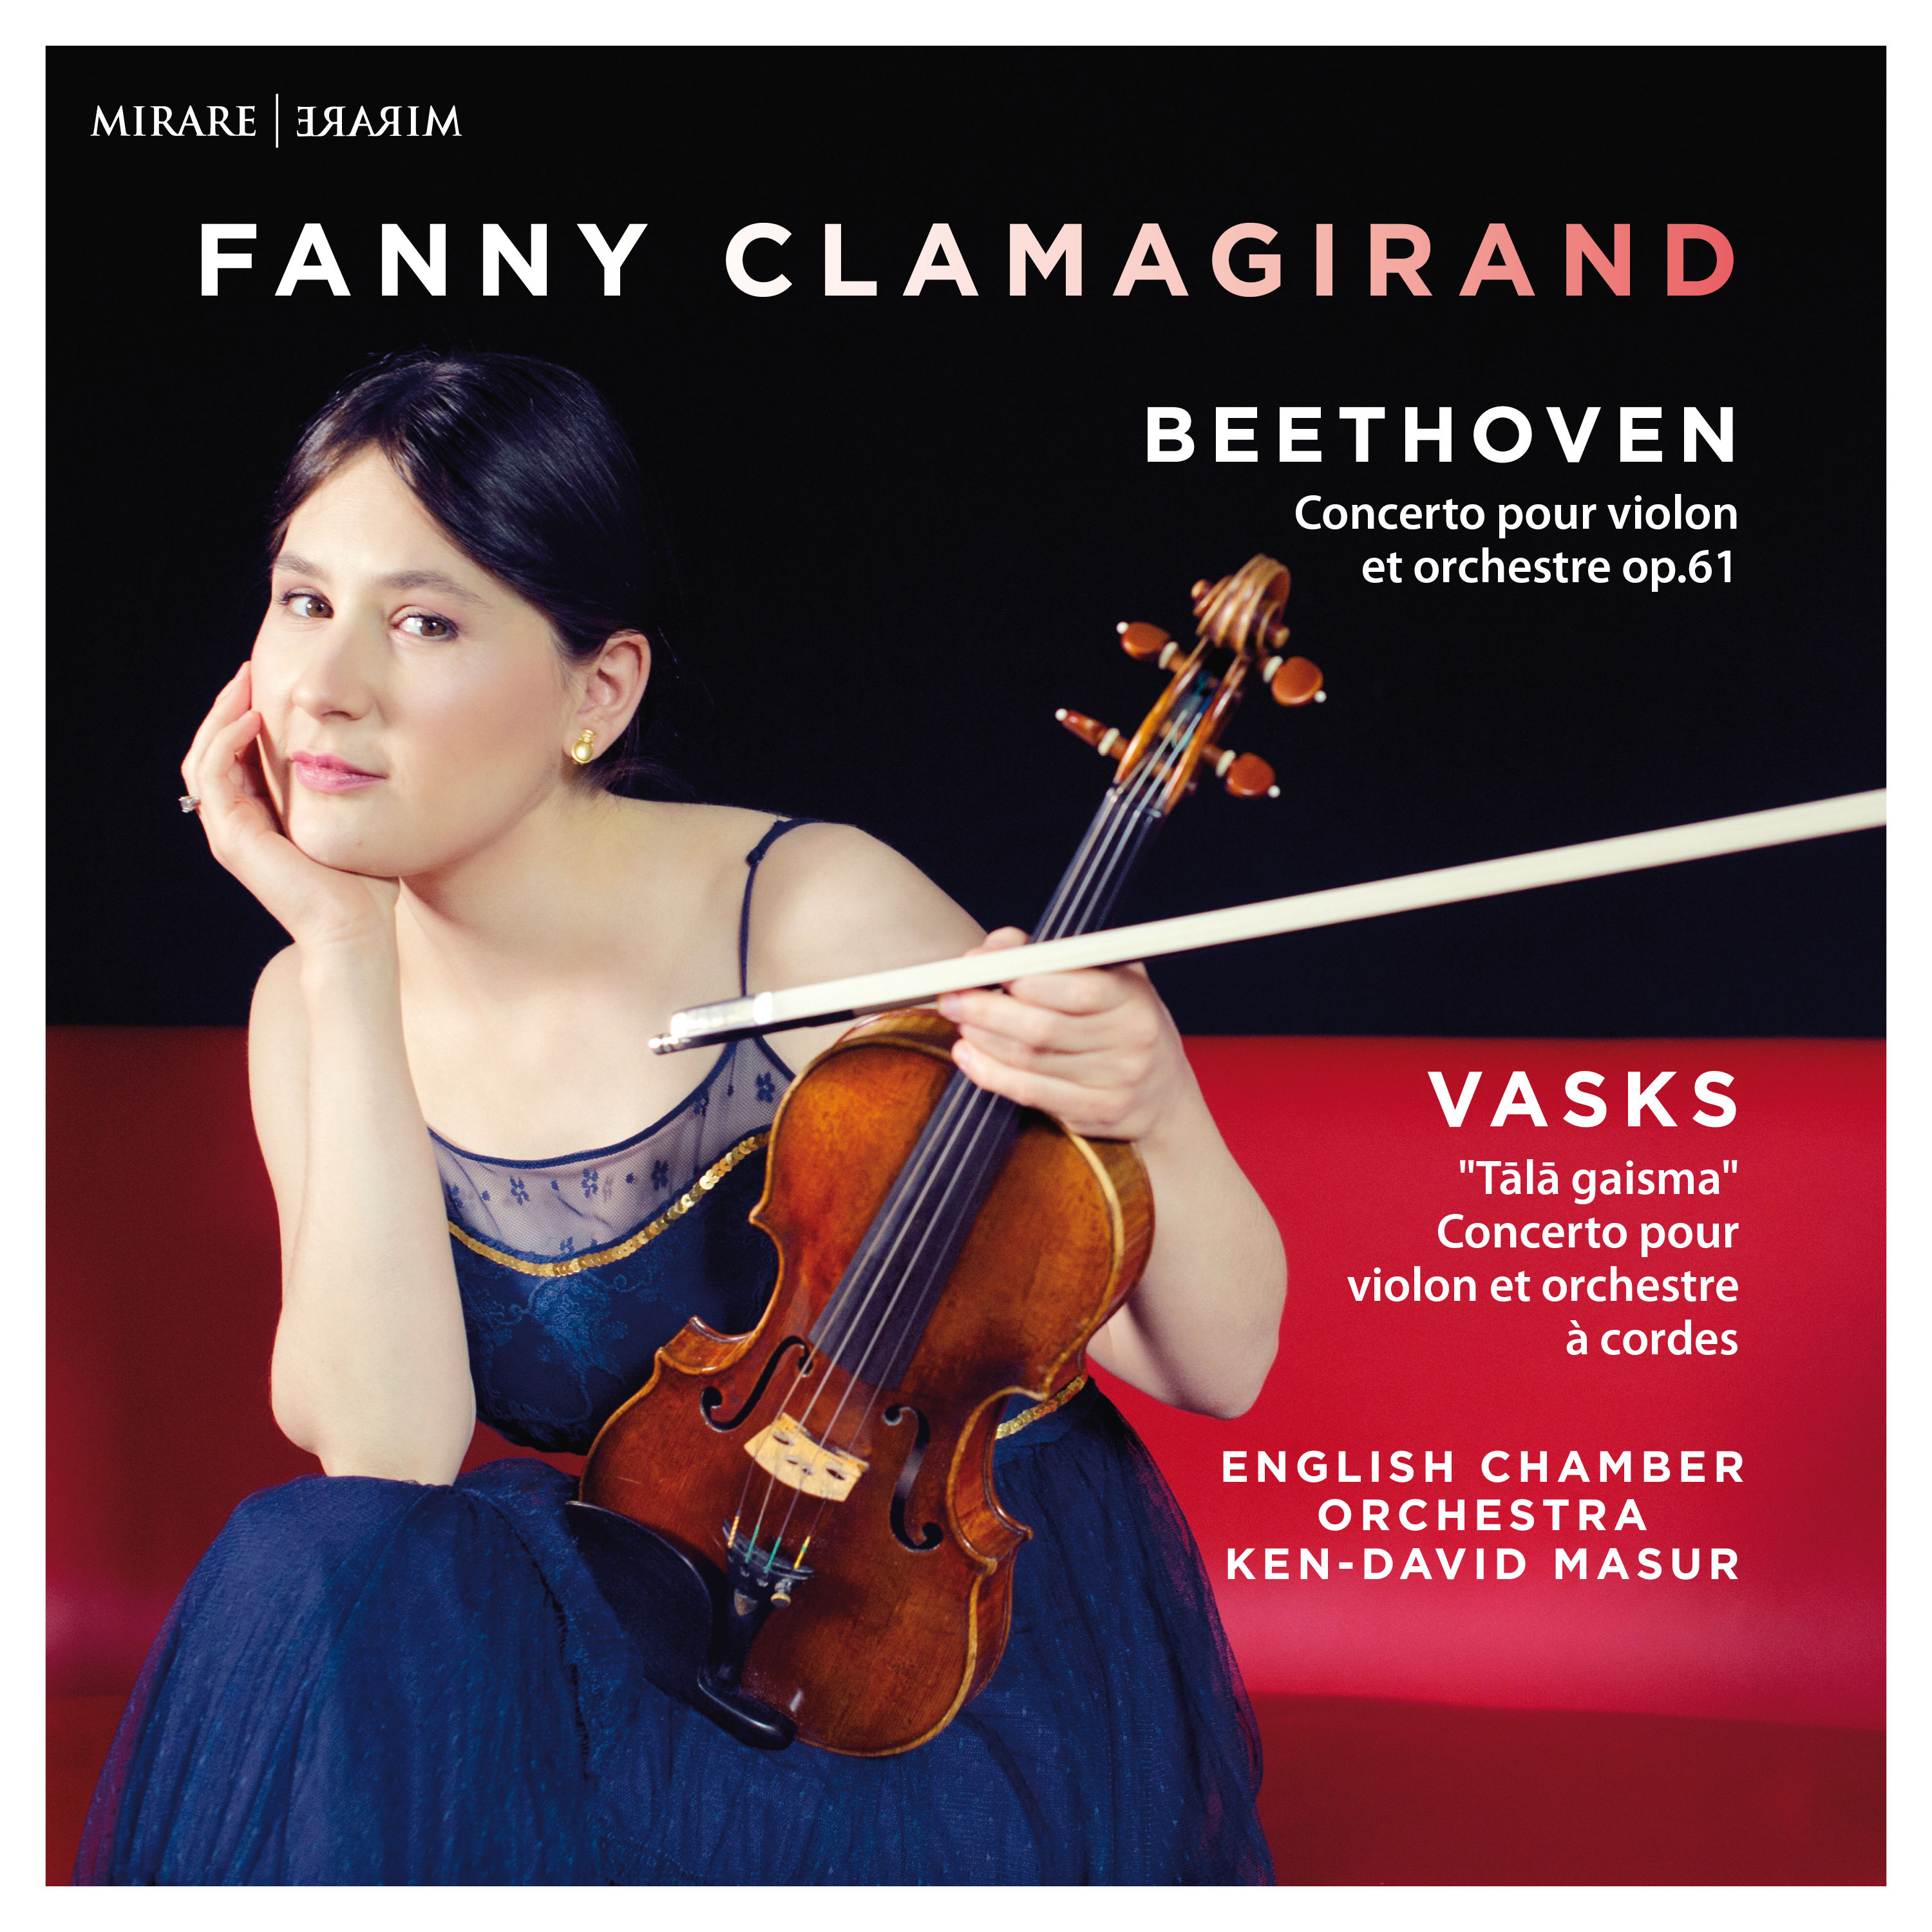 Fanny Clamagirand, English Chamber Orchestra and Ken David Masur – Beethoven, Vasks (2020) [FLAC 24bit/96kHz]